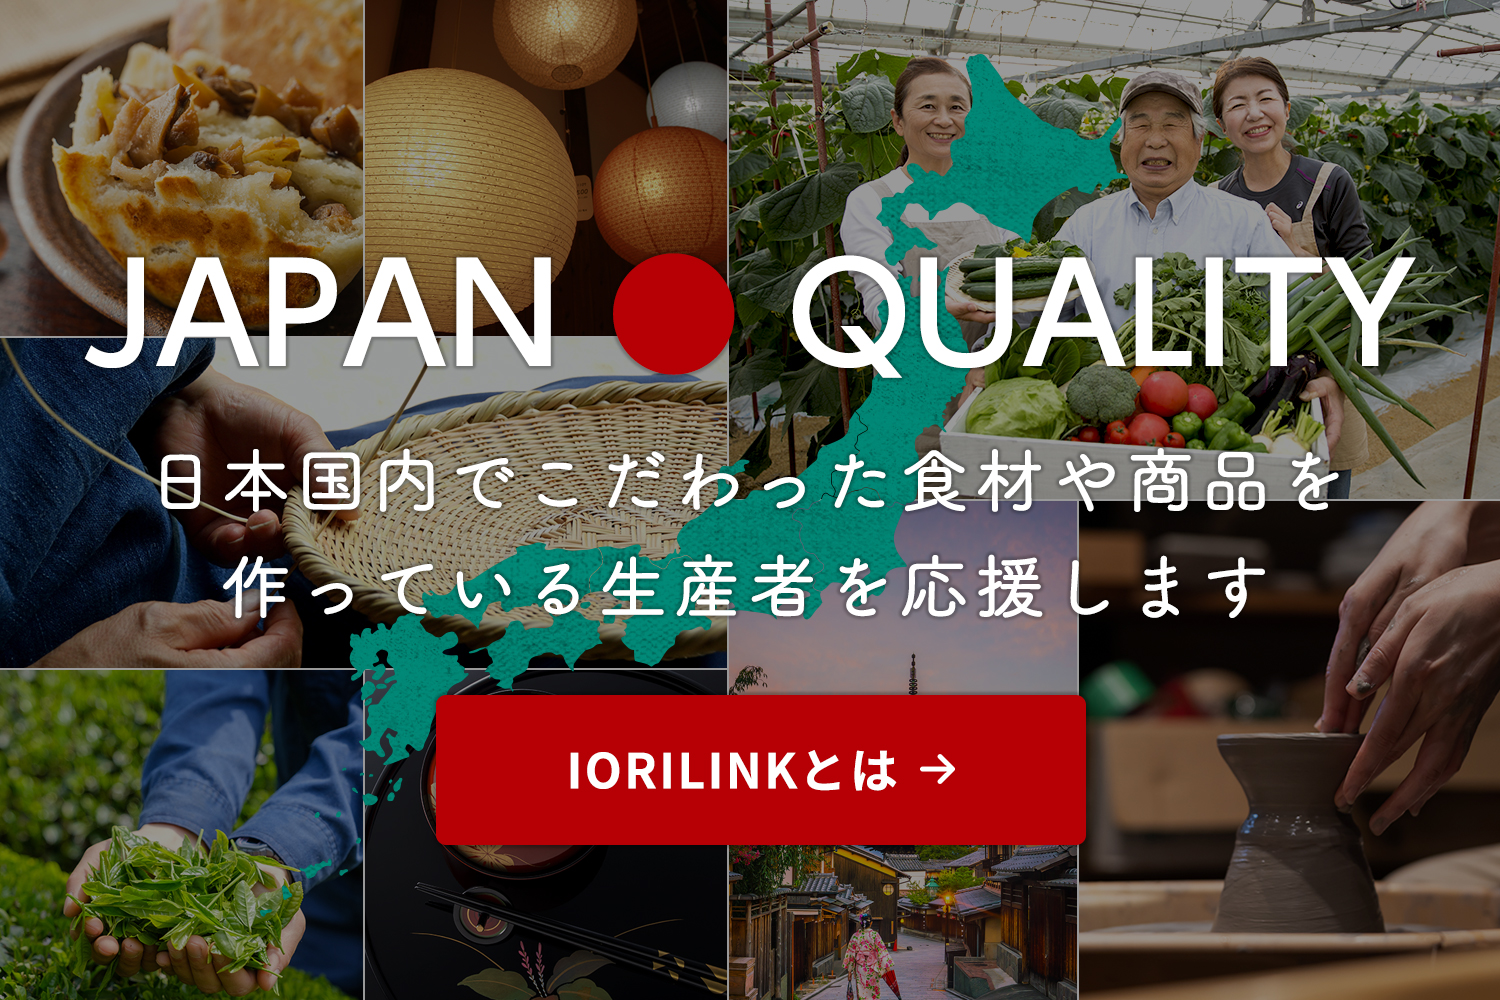 IORILINKは日本国内でこだわった食材や商品を作っている生産者を応援します